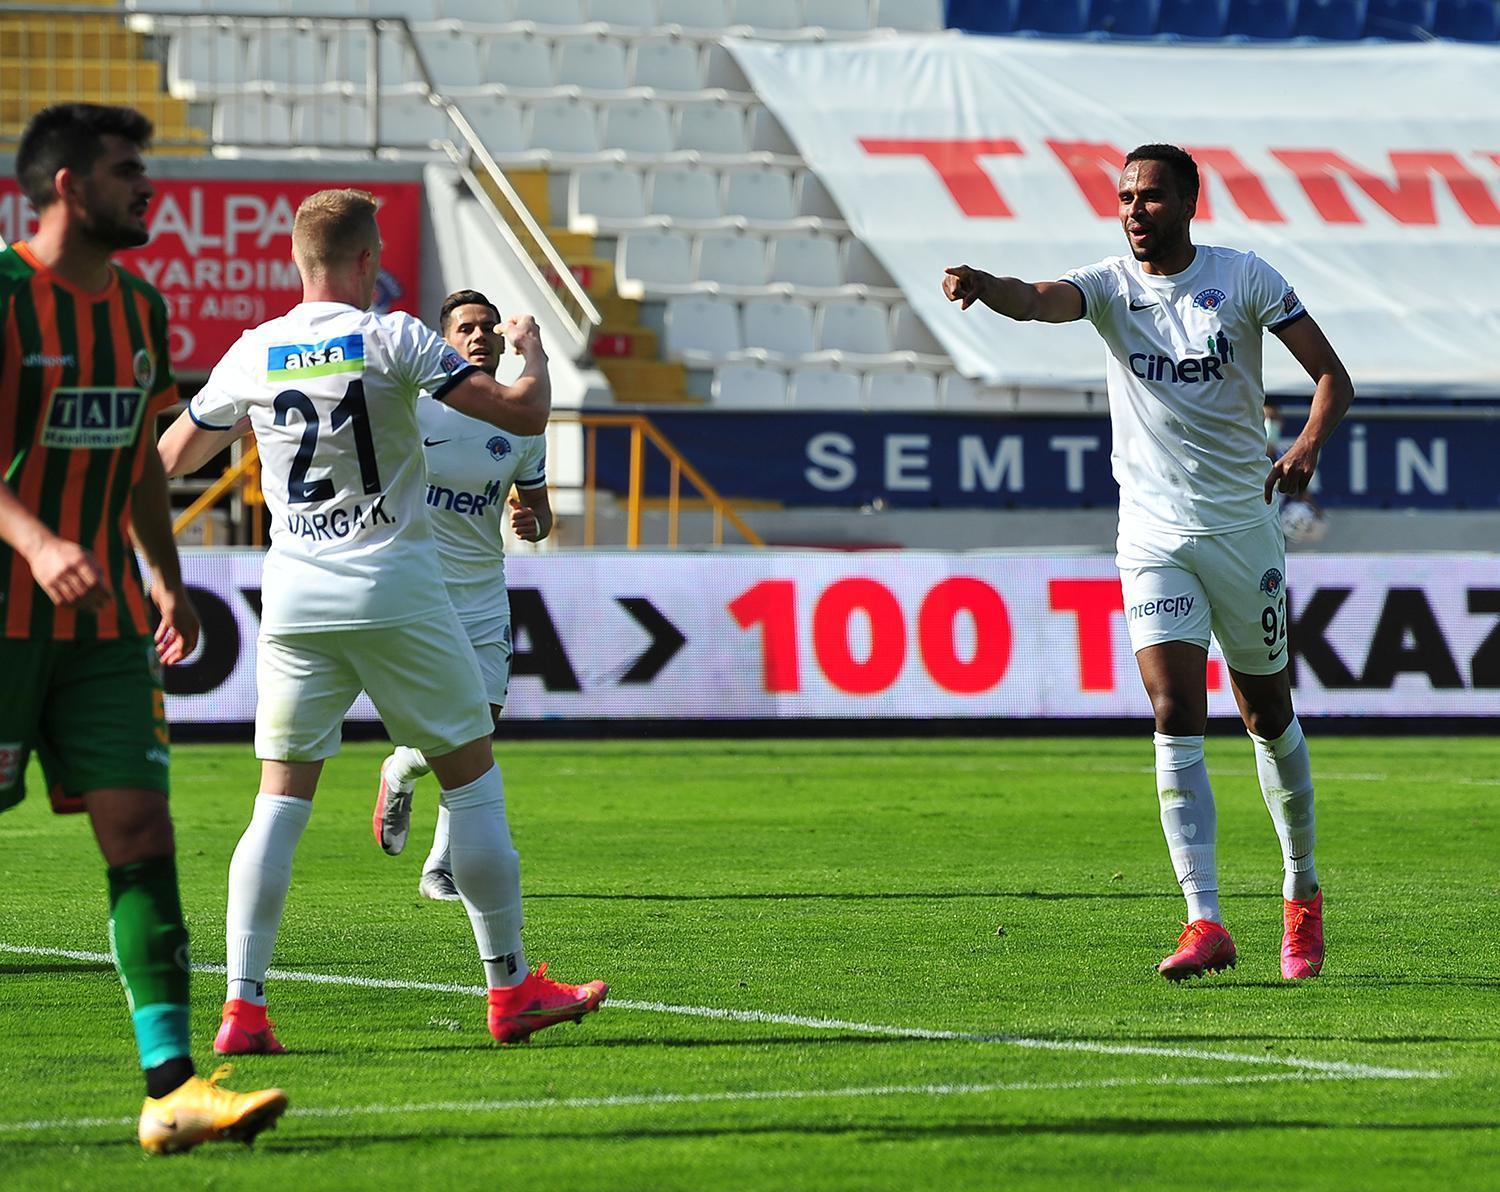 ÖZET | Kasımpaşa - Alanyaspor maç sonucu: 3-0